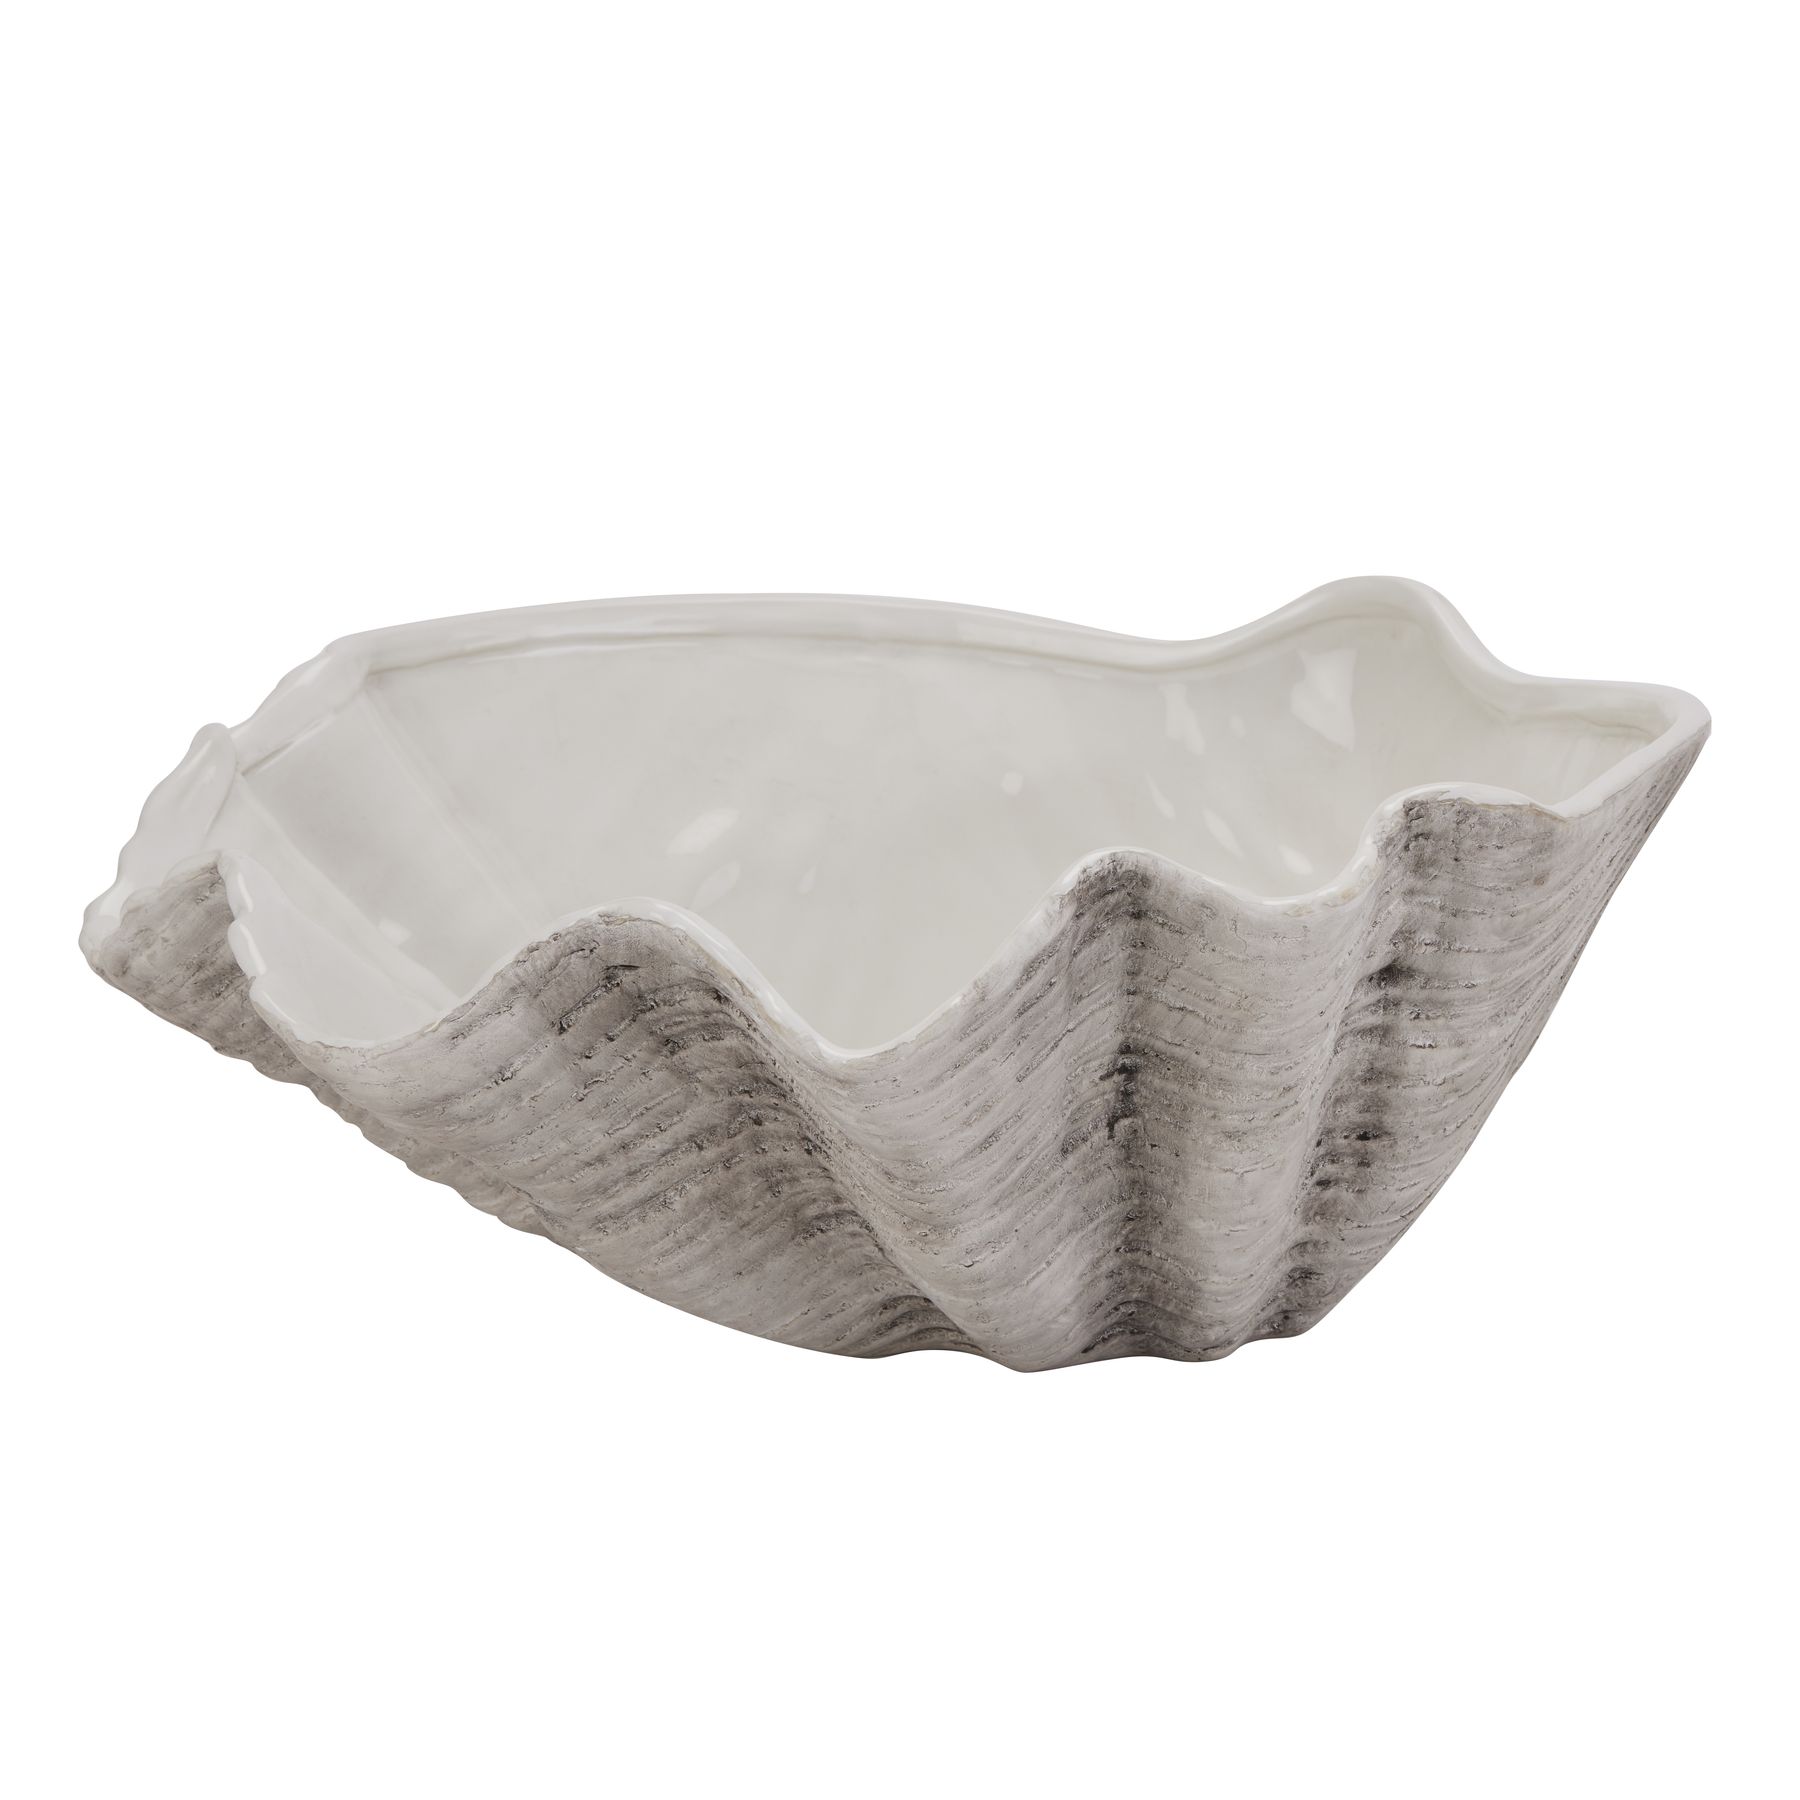 Large Ceramic Adele Shell Bowl - Image 1